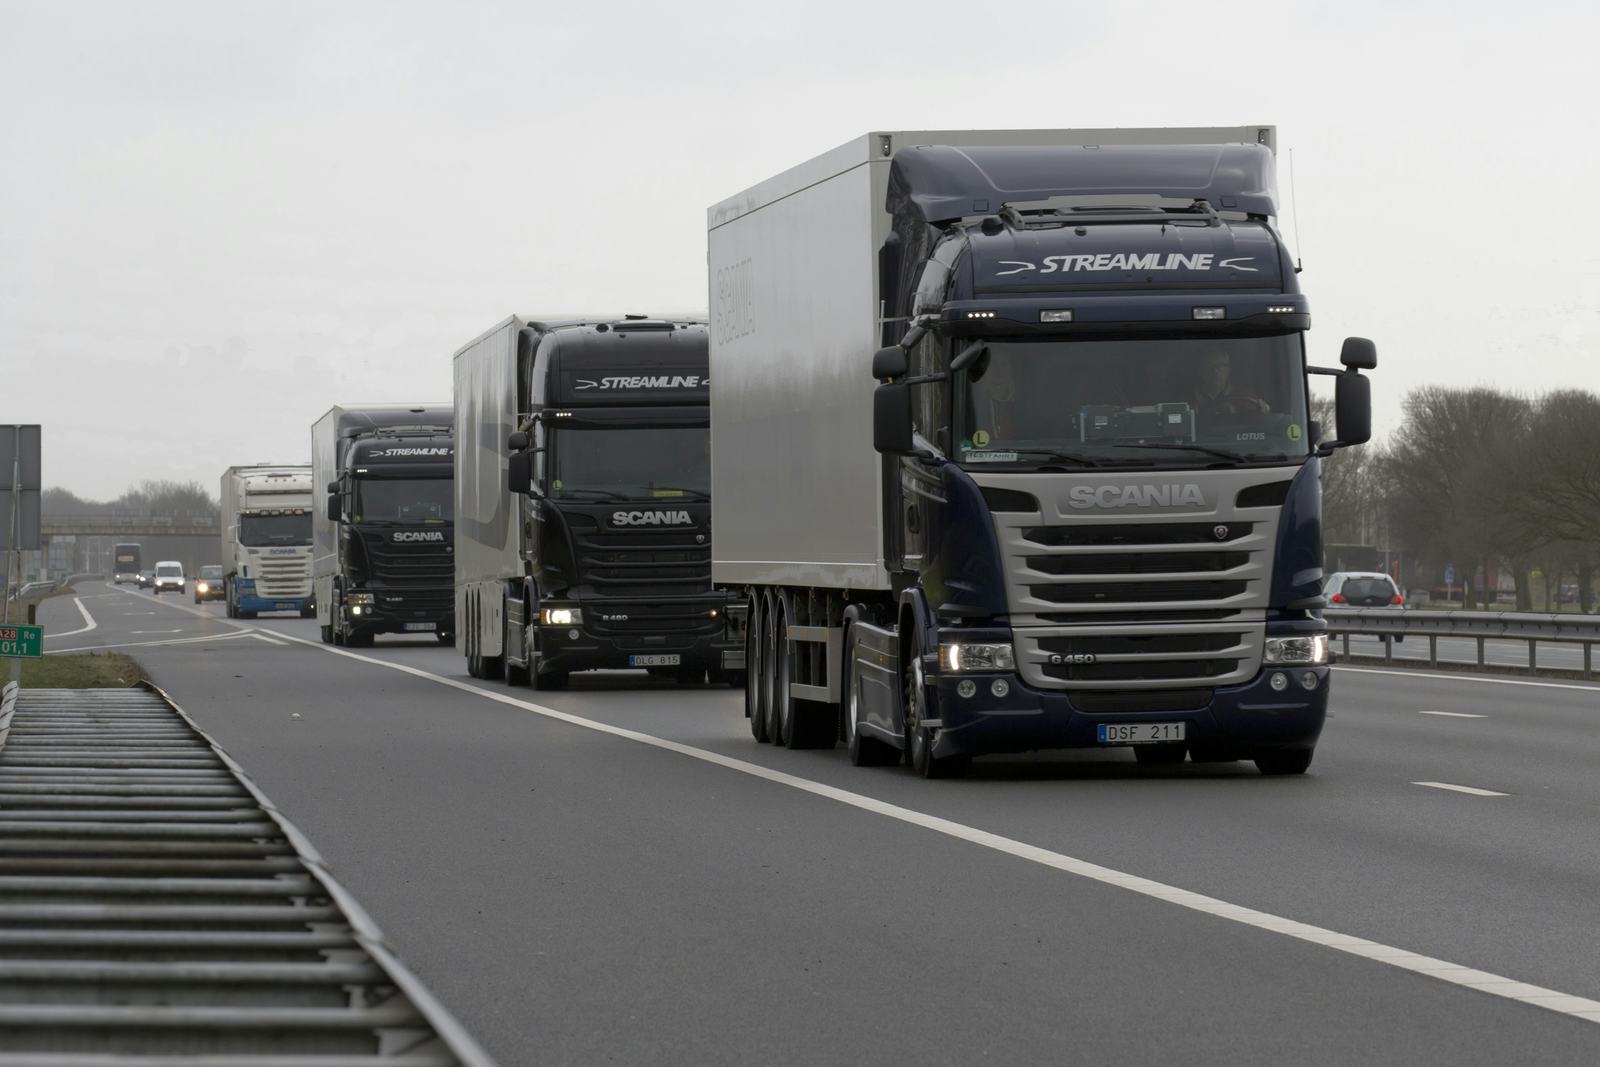 Praktijktesten truck platooning op openbare weg van start